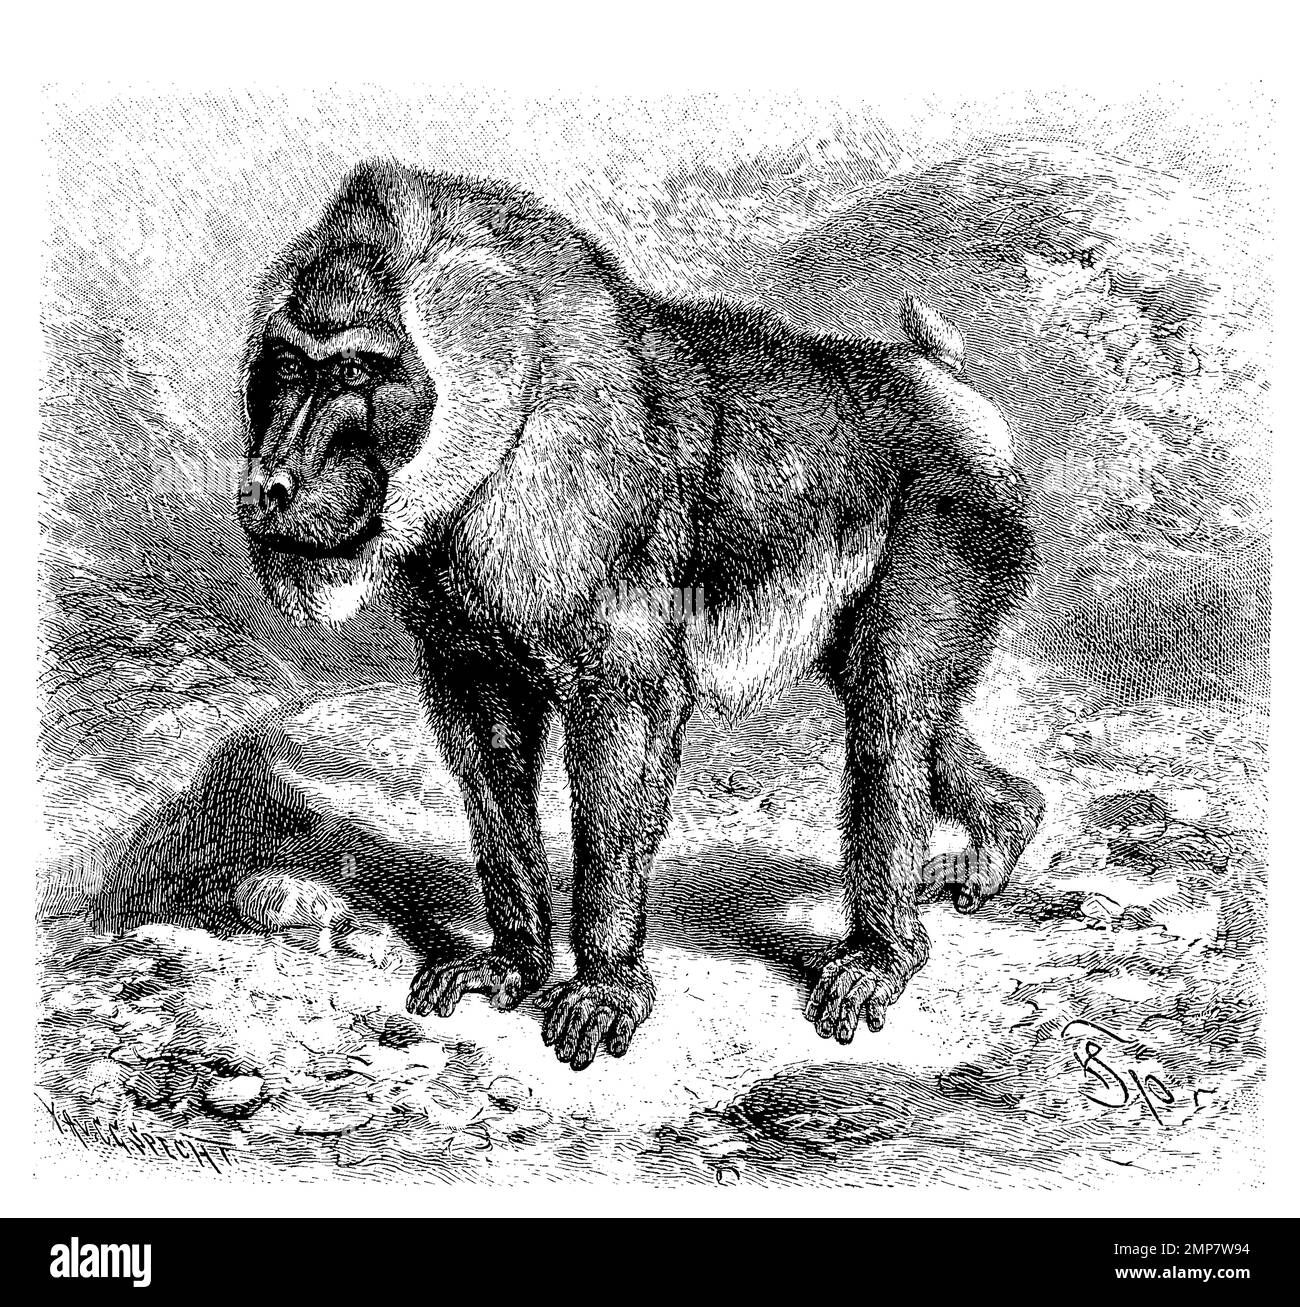 Drill, Mandrillus leucophaeus, eine Primatenart aus der Familie der Meerkatzenverwandten, ristorante digitale Reproduktion einer Originalvorlage aus dem 19. Jahrhundert, genaues Originalatum nicht bekannt Foto Stock